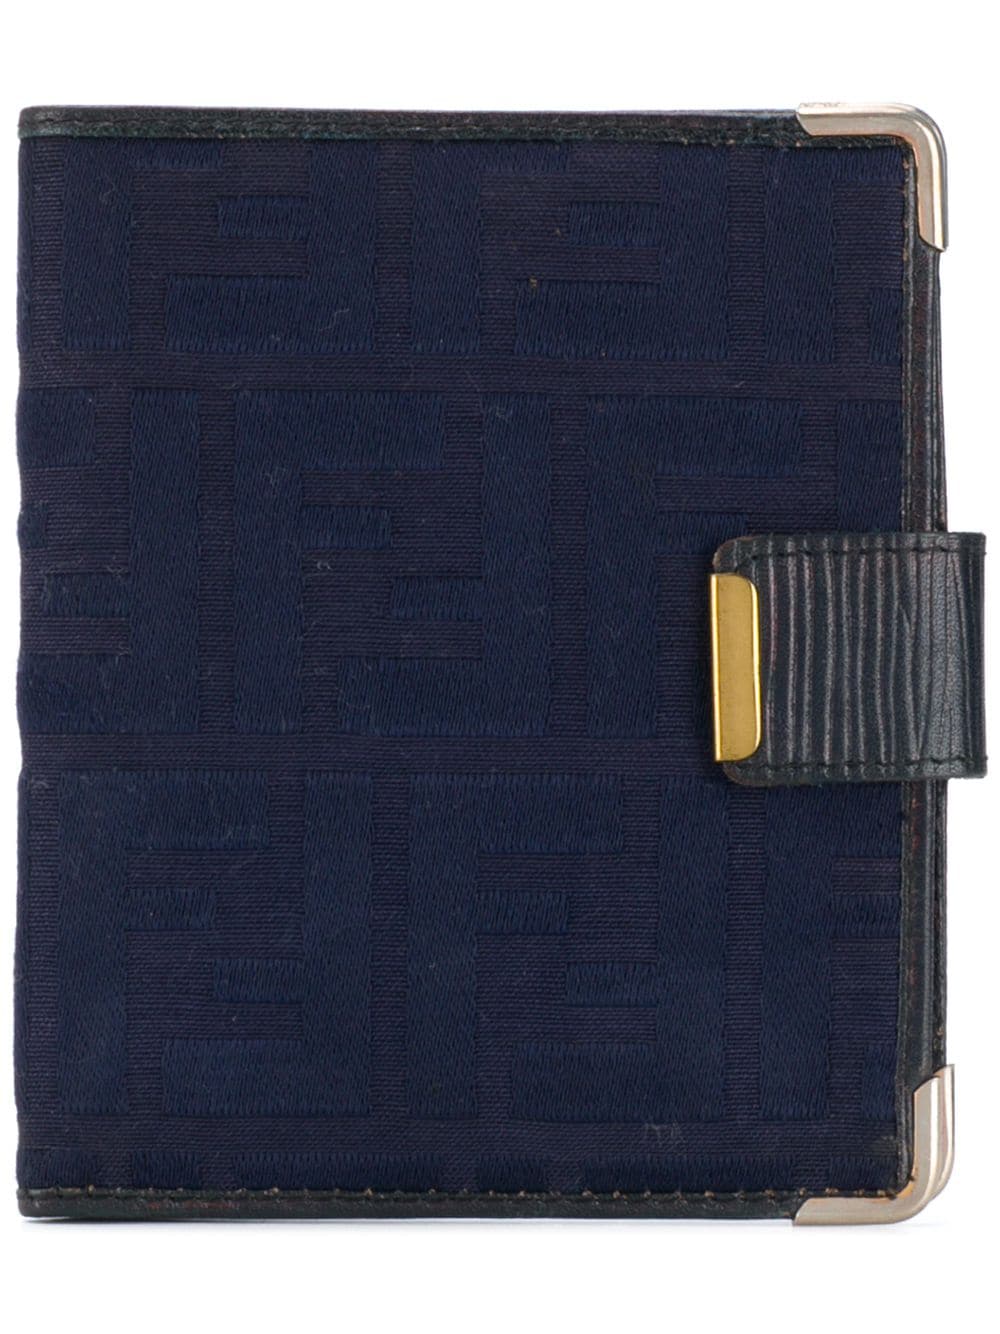 фото Fendi pre-owned кошелек в два сложения с логотипом 1980-х годов